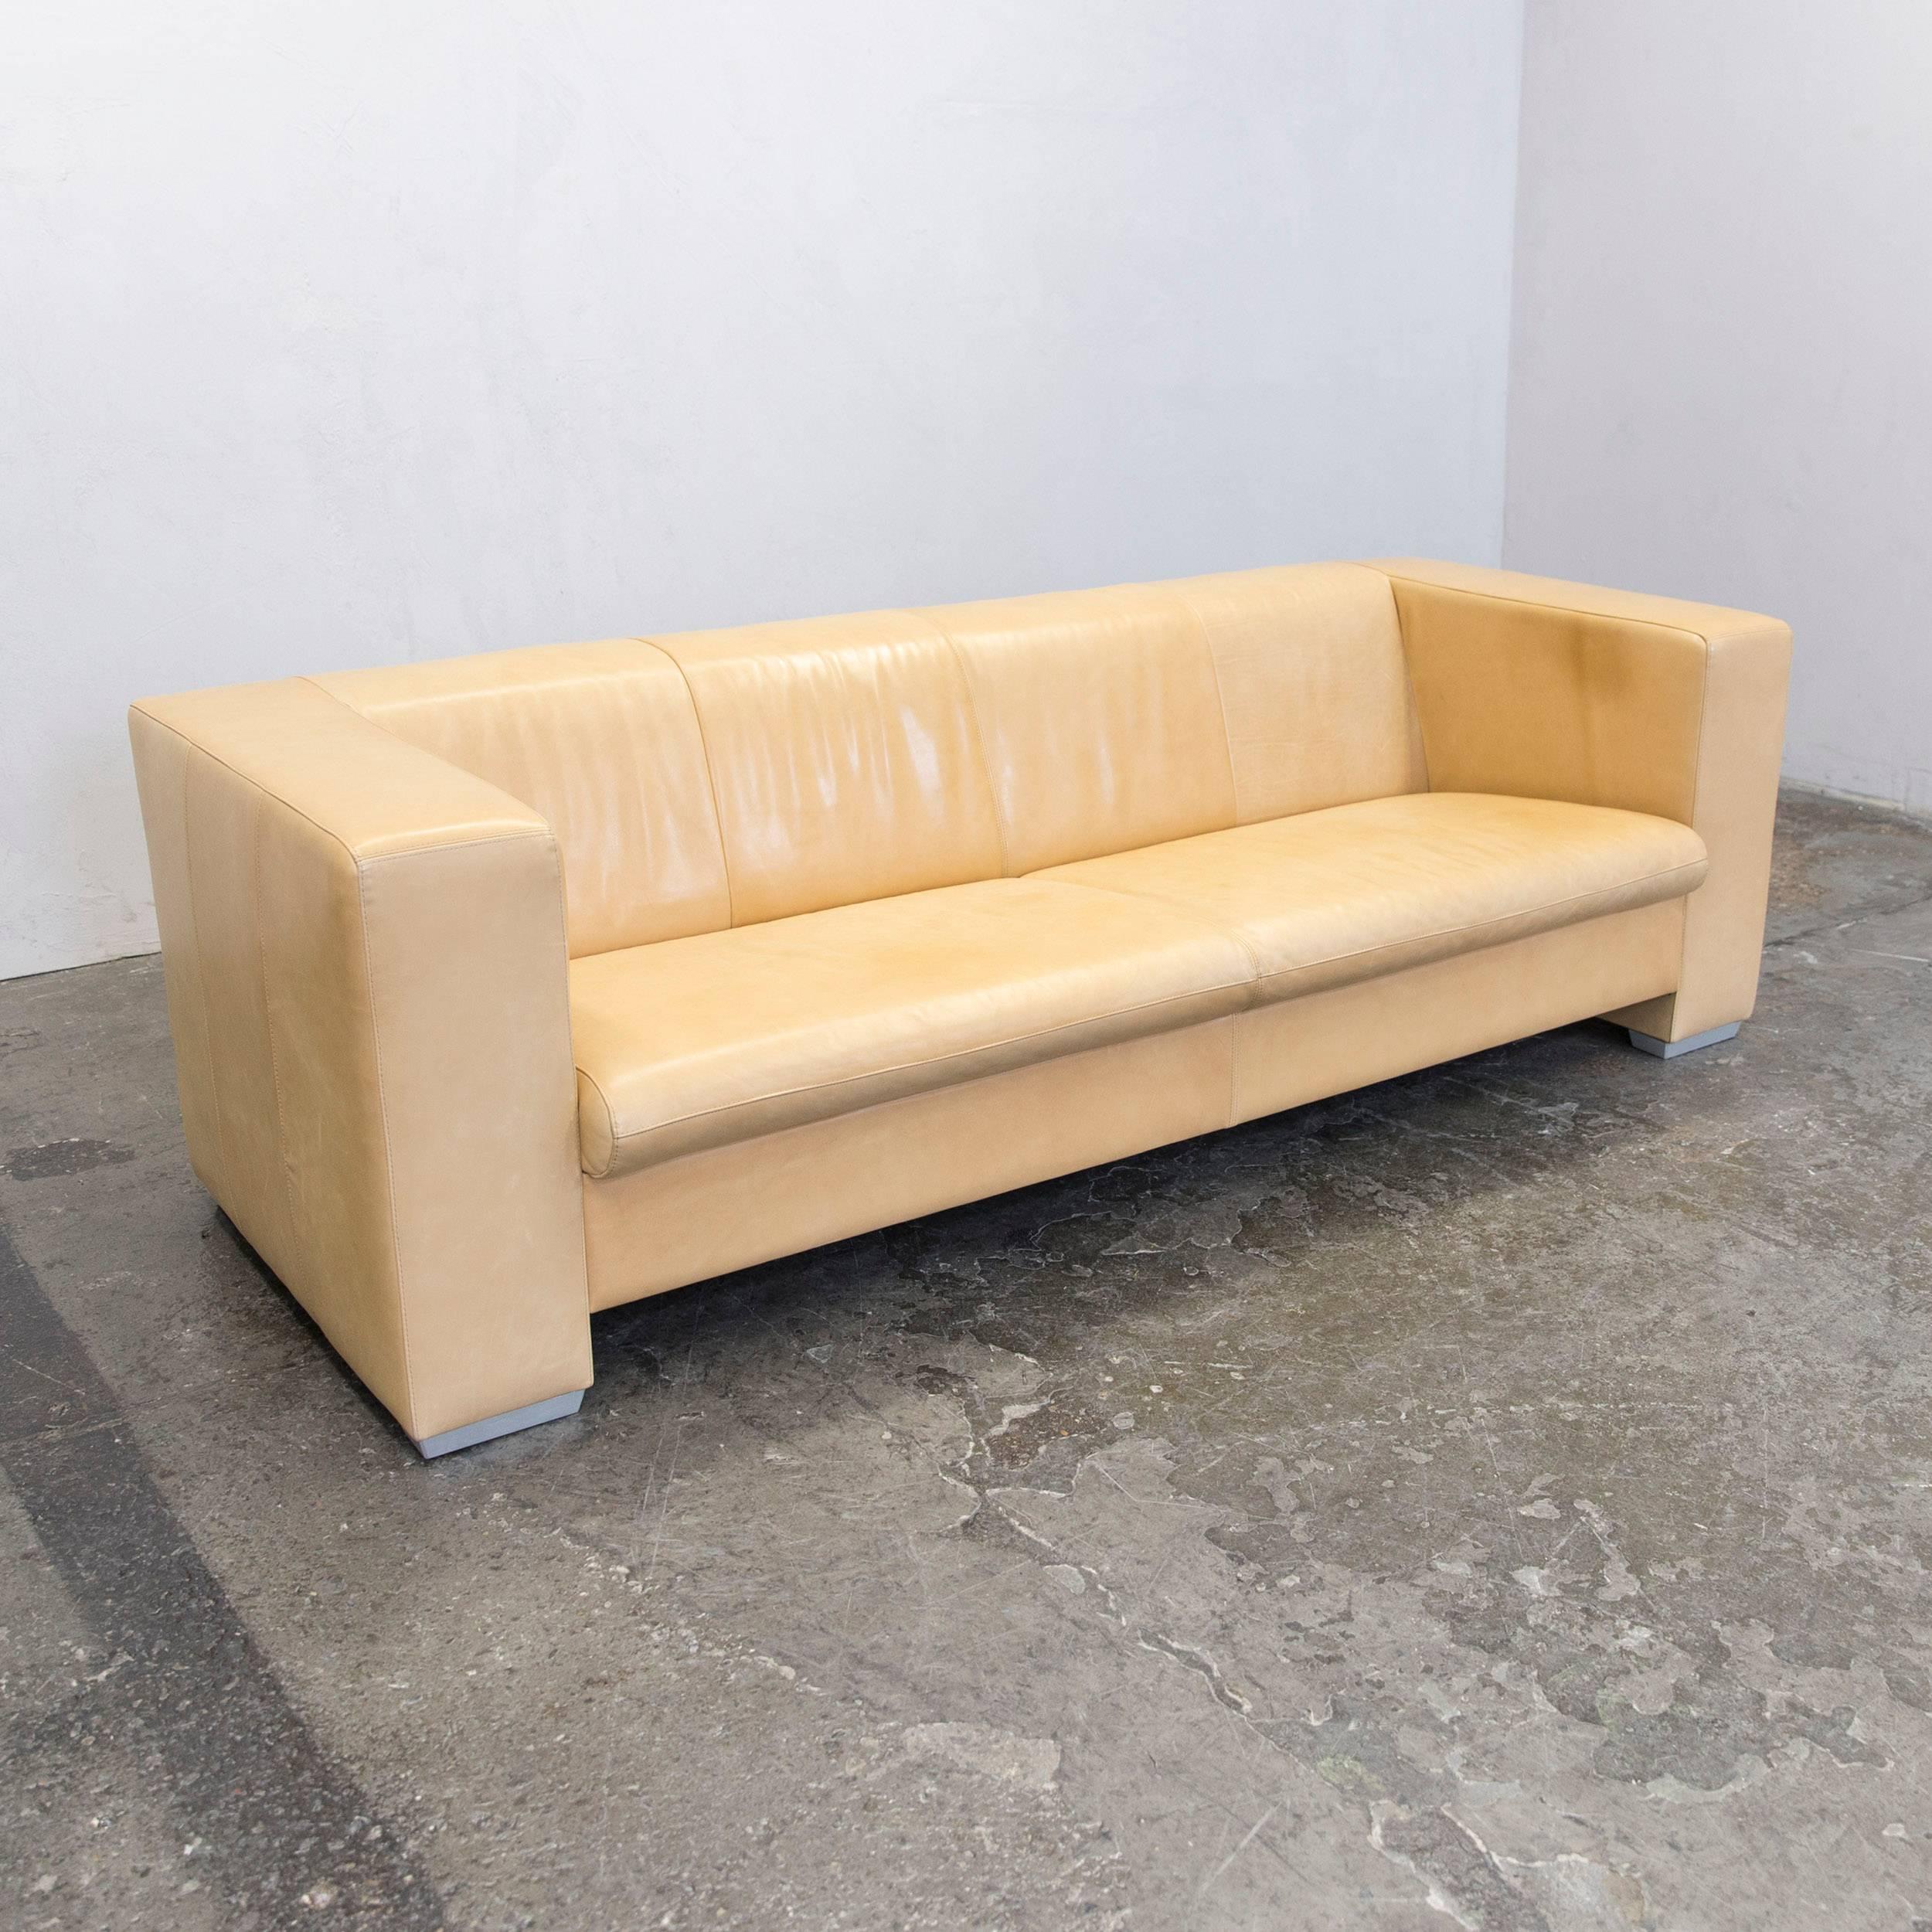 German Machalke Designer Sofa Leather Crème Beige Three-Seat Couch Modern